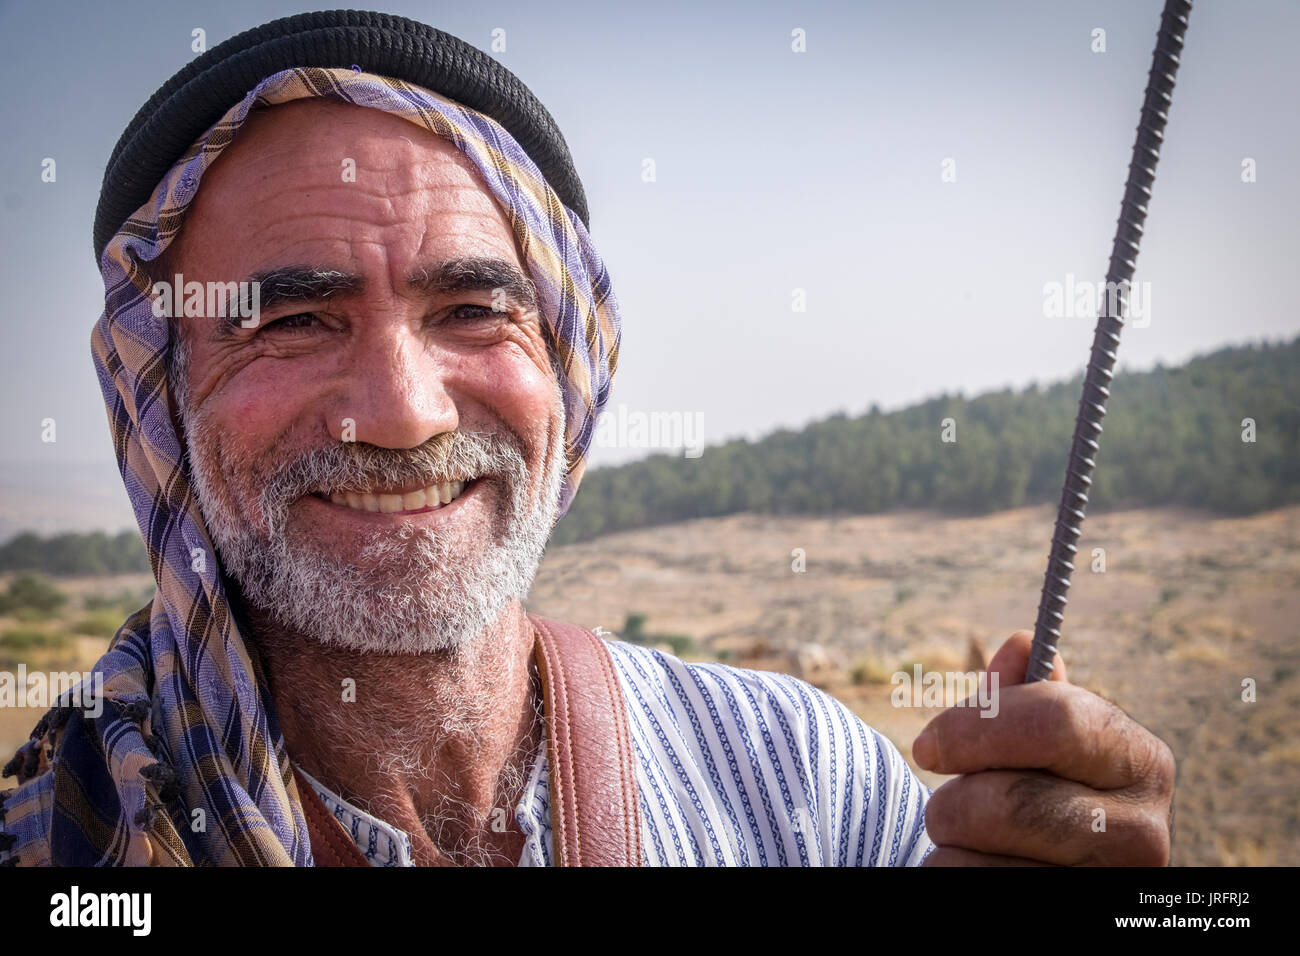 Ritratto di un agricoltore palestinese in abito tradizionale tenta di ritornare nella sua casa dopo essere stati cacciati dai coloni israeliani di Hebron hills Foto Stock